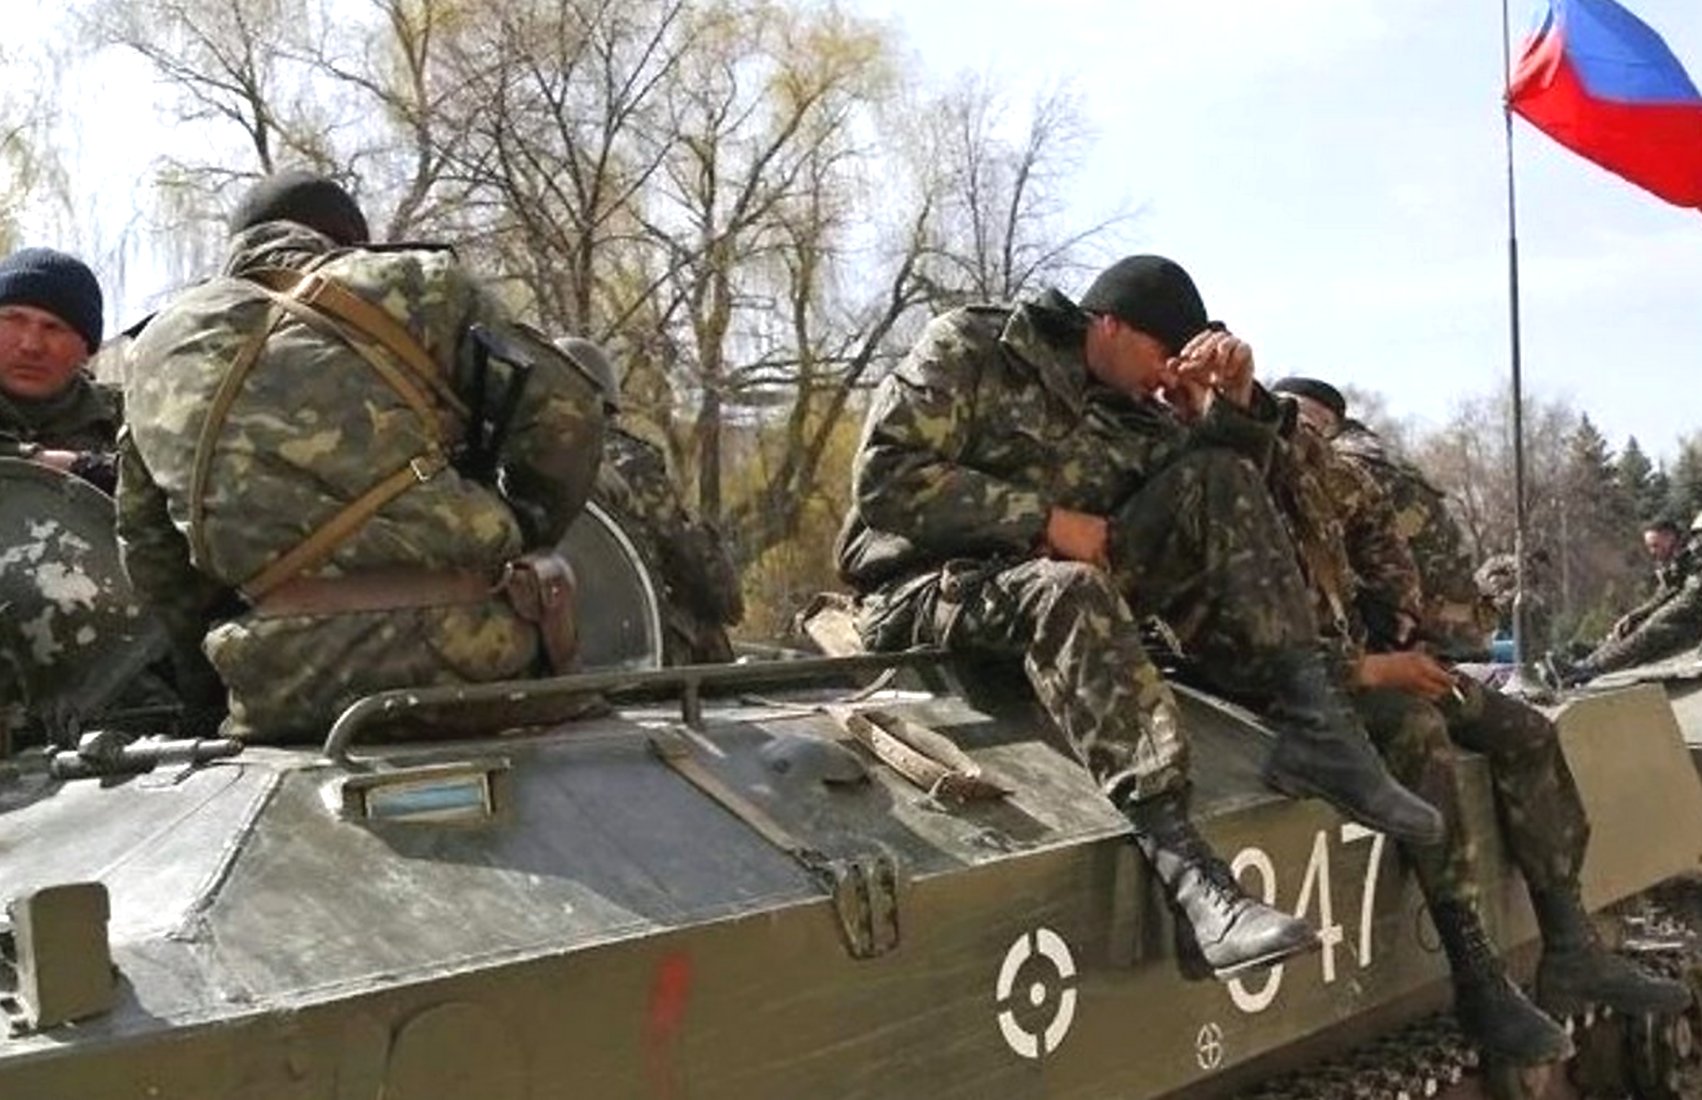 Таран рассказал, при каких условиях возможно «возобновление активной вооружённой агрессии» со стороны РФ